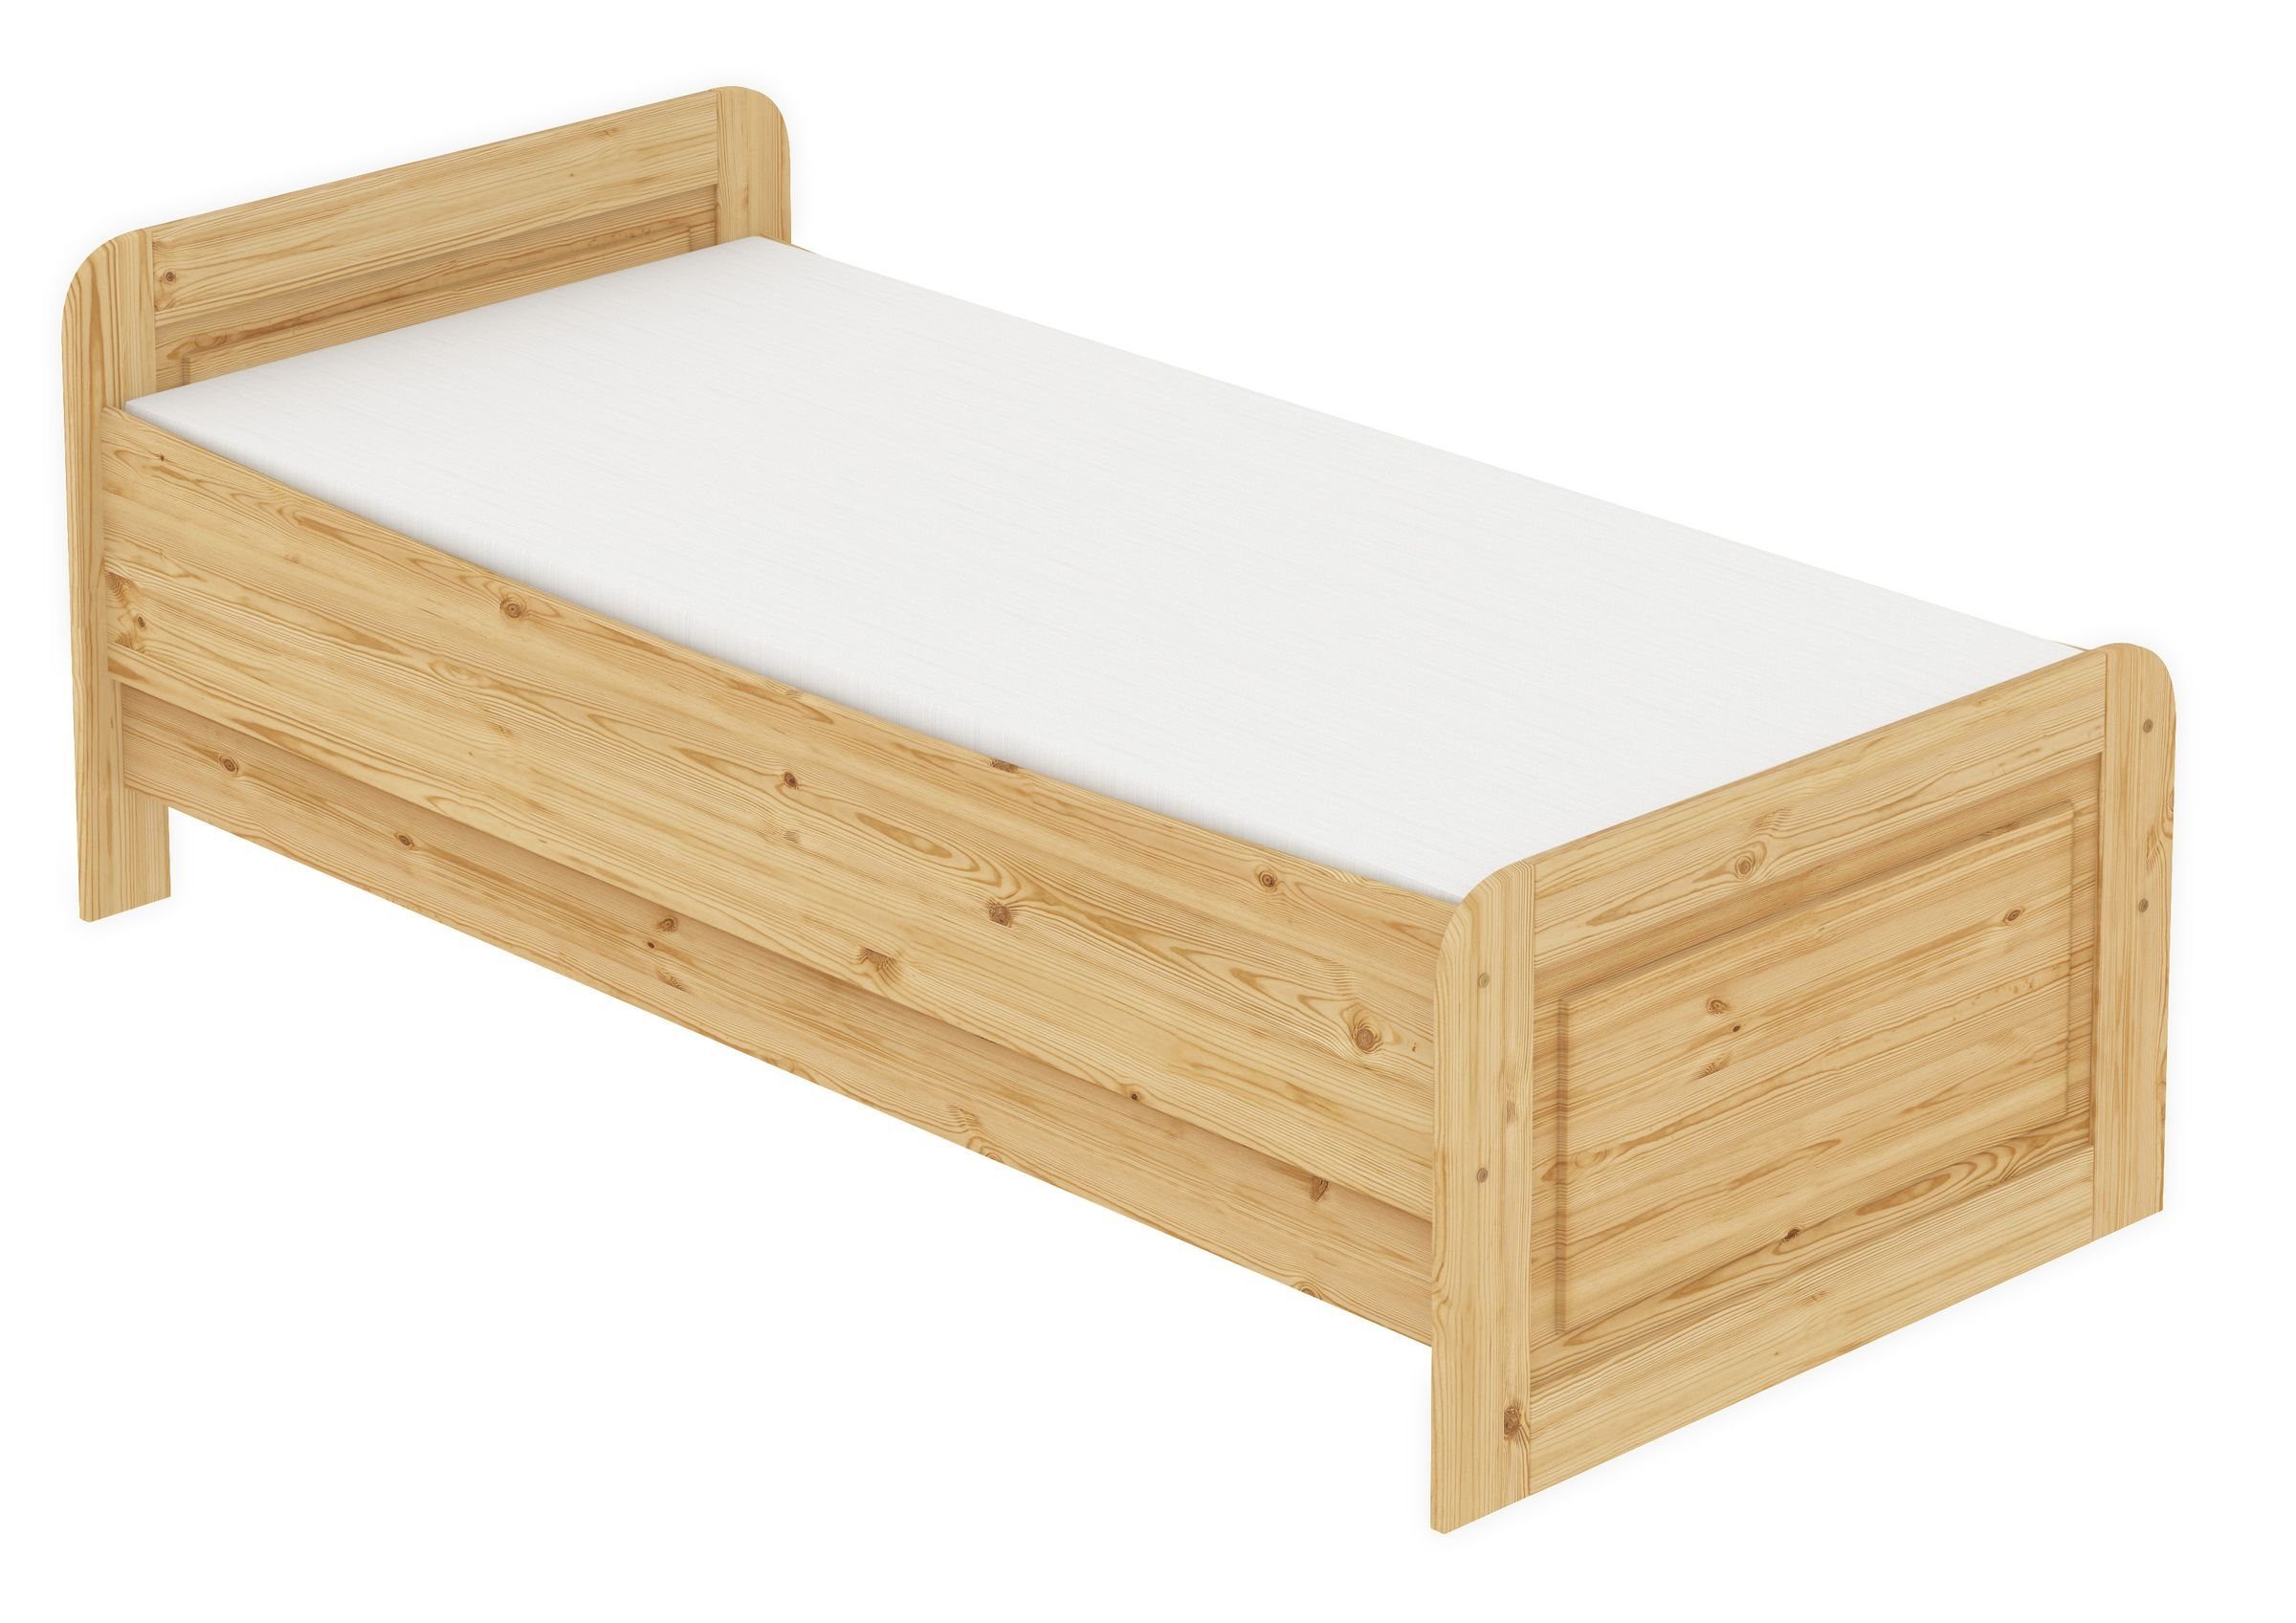 ERST-HOLZ Bett Holzbett 90x200 Kiefer massiv mit Federleisten und Matratze, Kieferfarblos lackiert